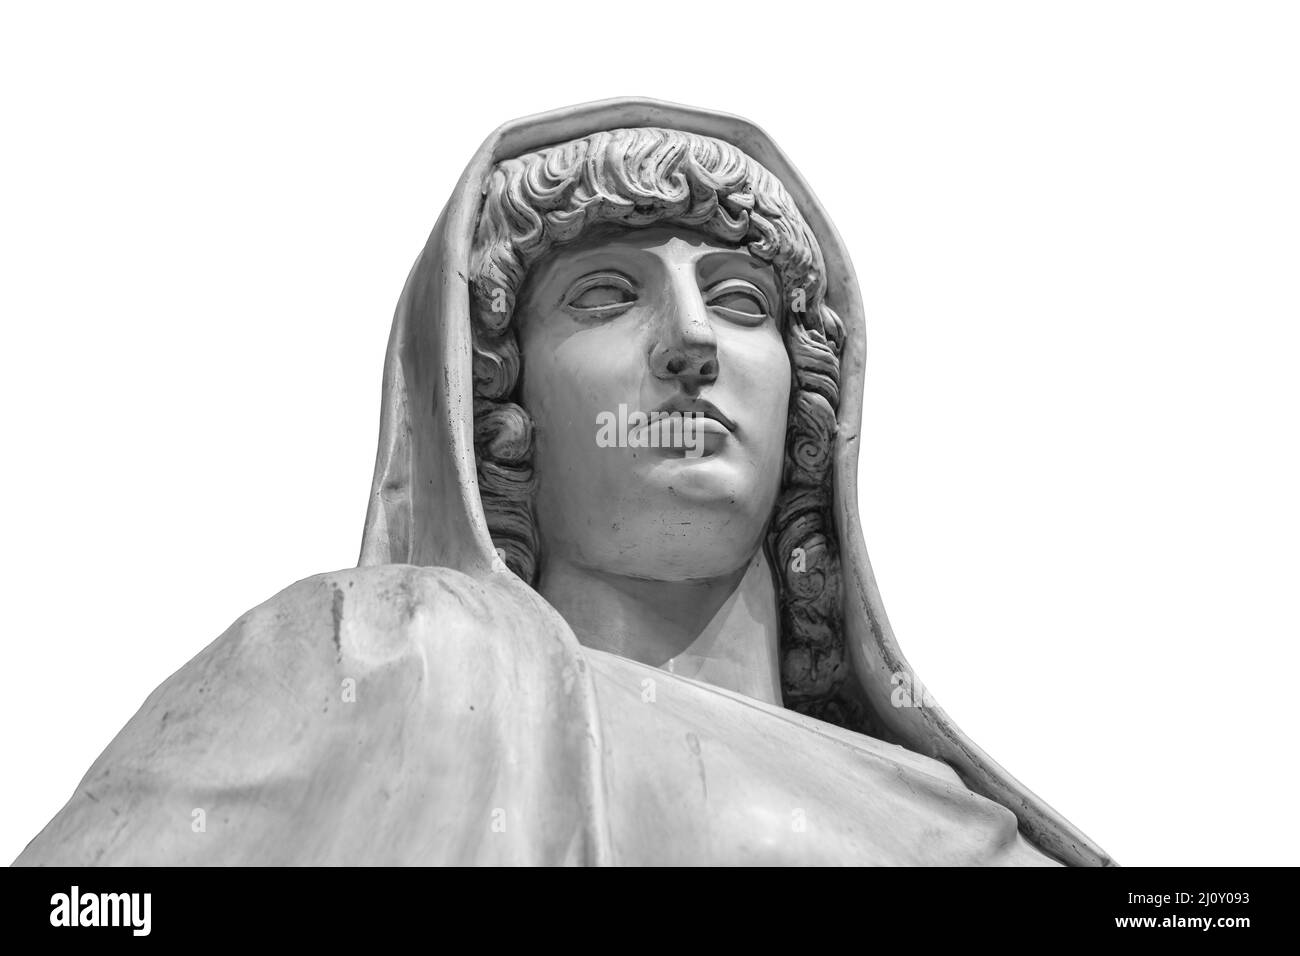 Vesta römische Göttin des Herdes, der Heimat und der Familie in der römischen Religion. Antike Büste isoliert auf weißem Hintergrund mit Ausschnitt Stockfoto